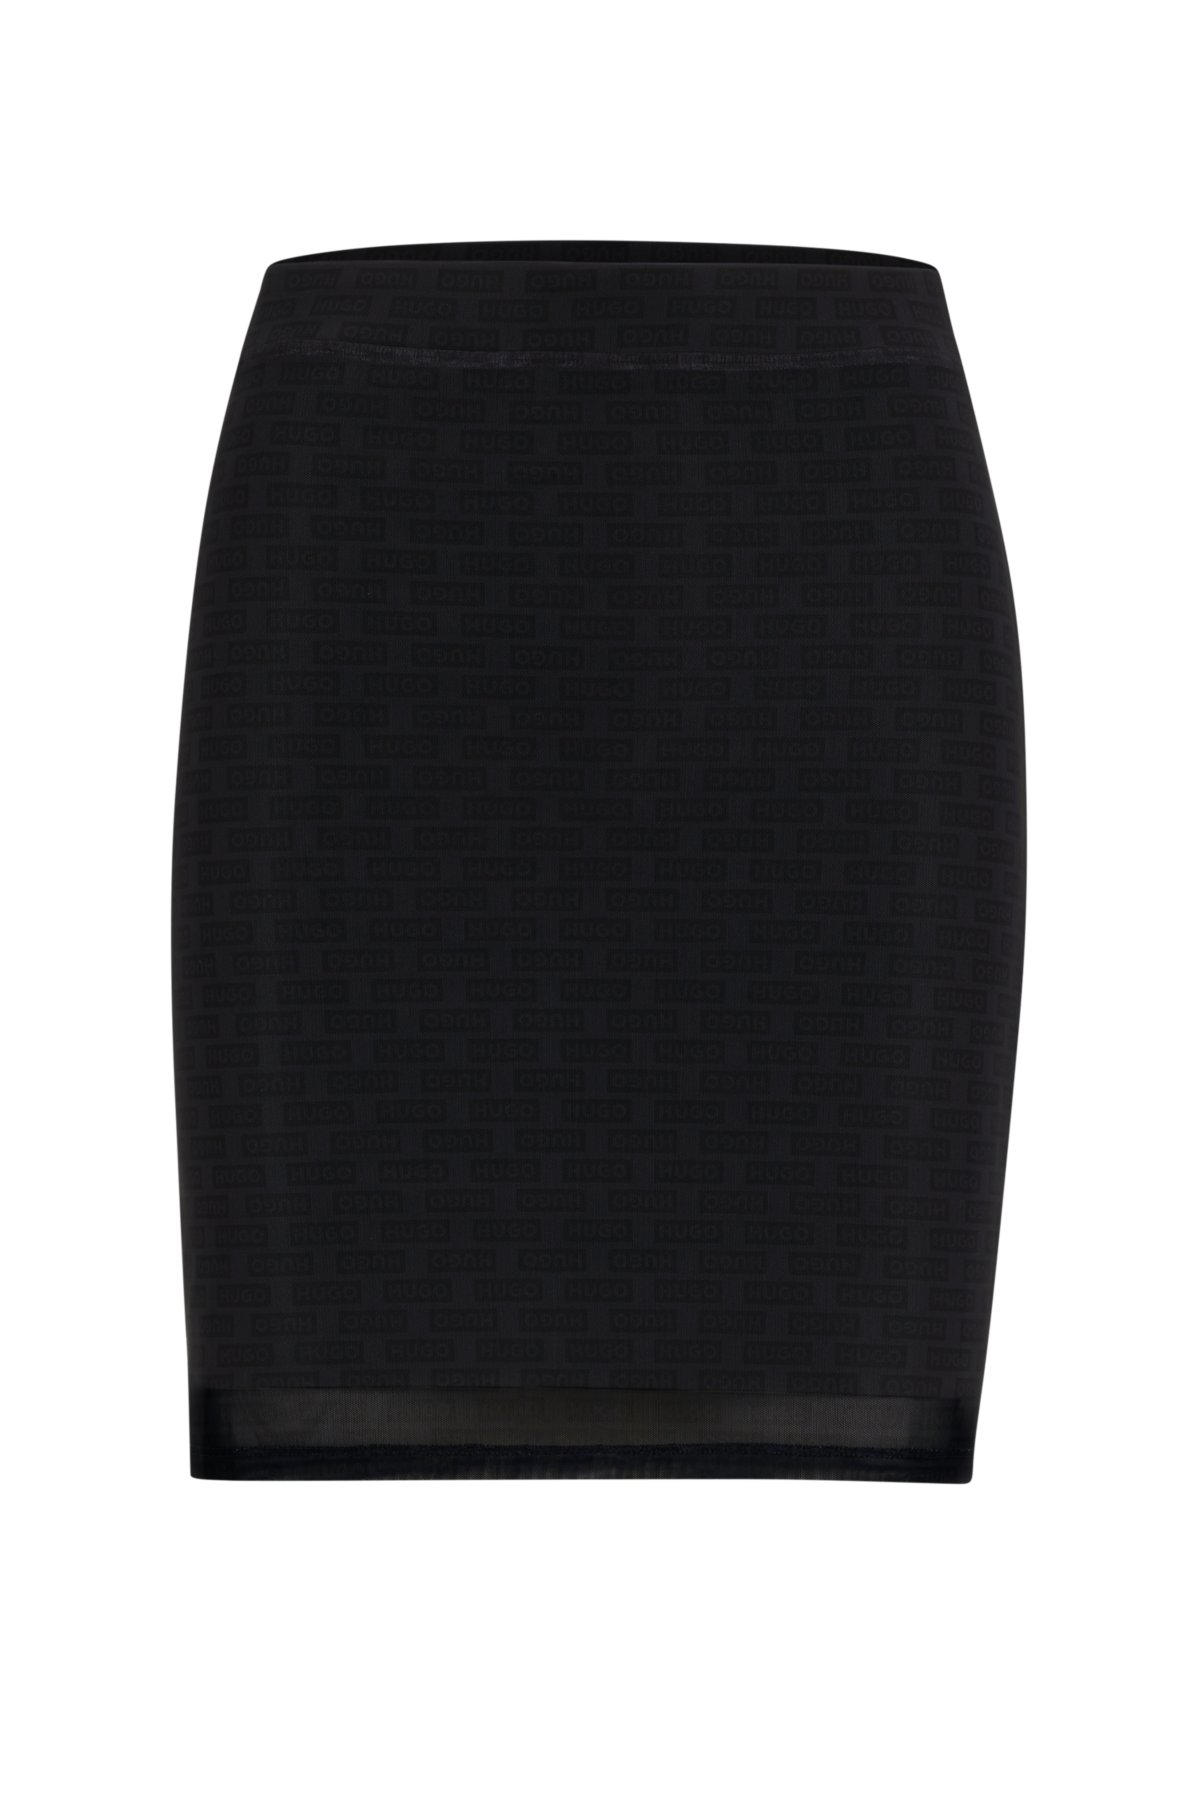 Slim-fit mini skirt in logo mesh, Black Patterned